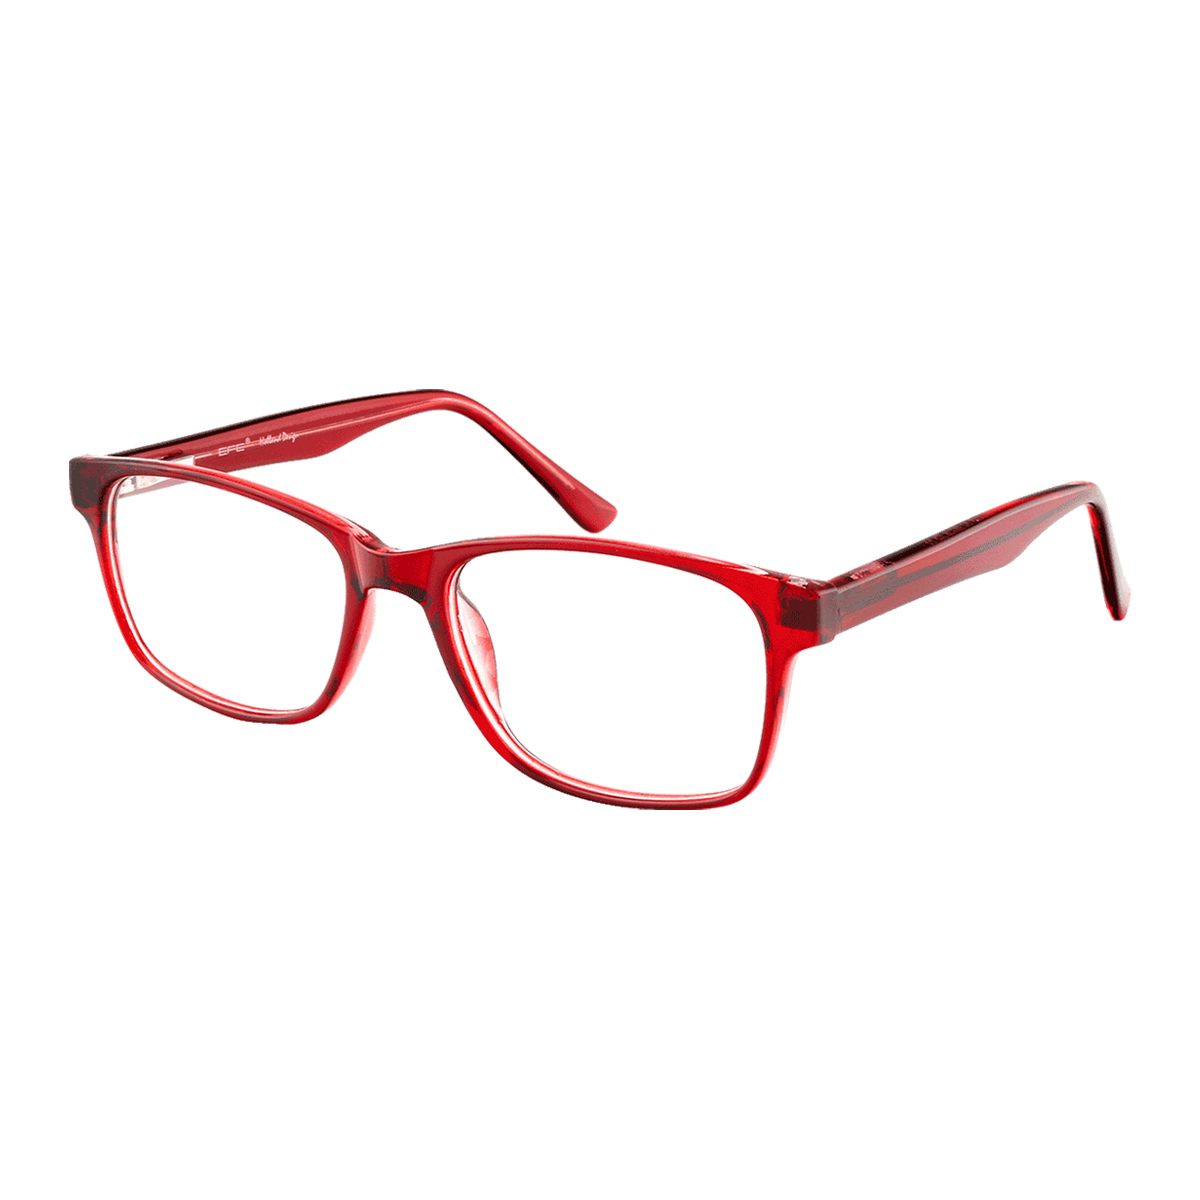 Durand - Square Red Reading Glasses for Men & Women